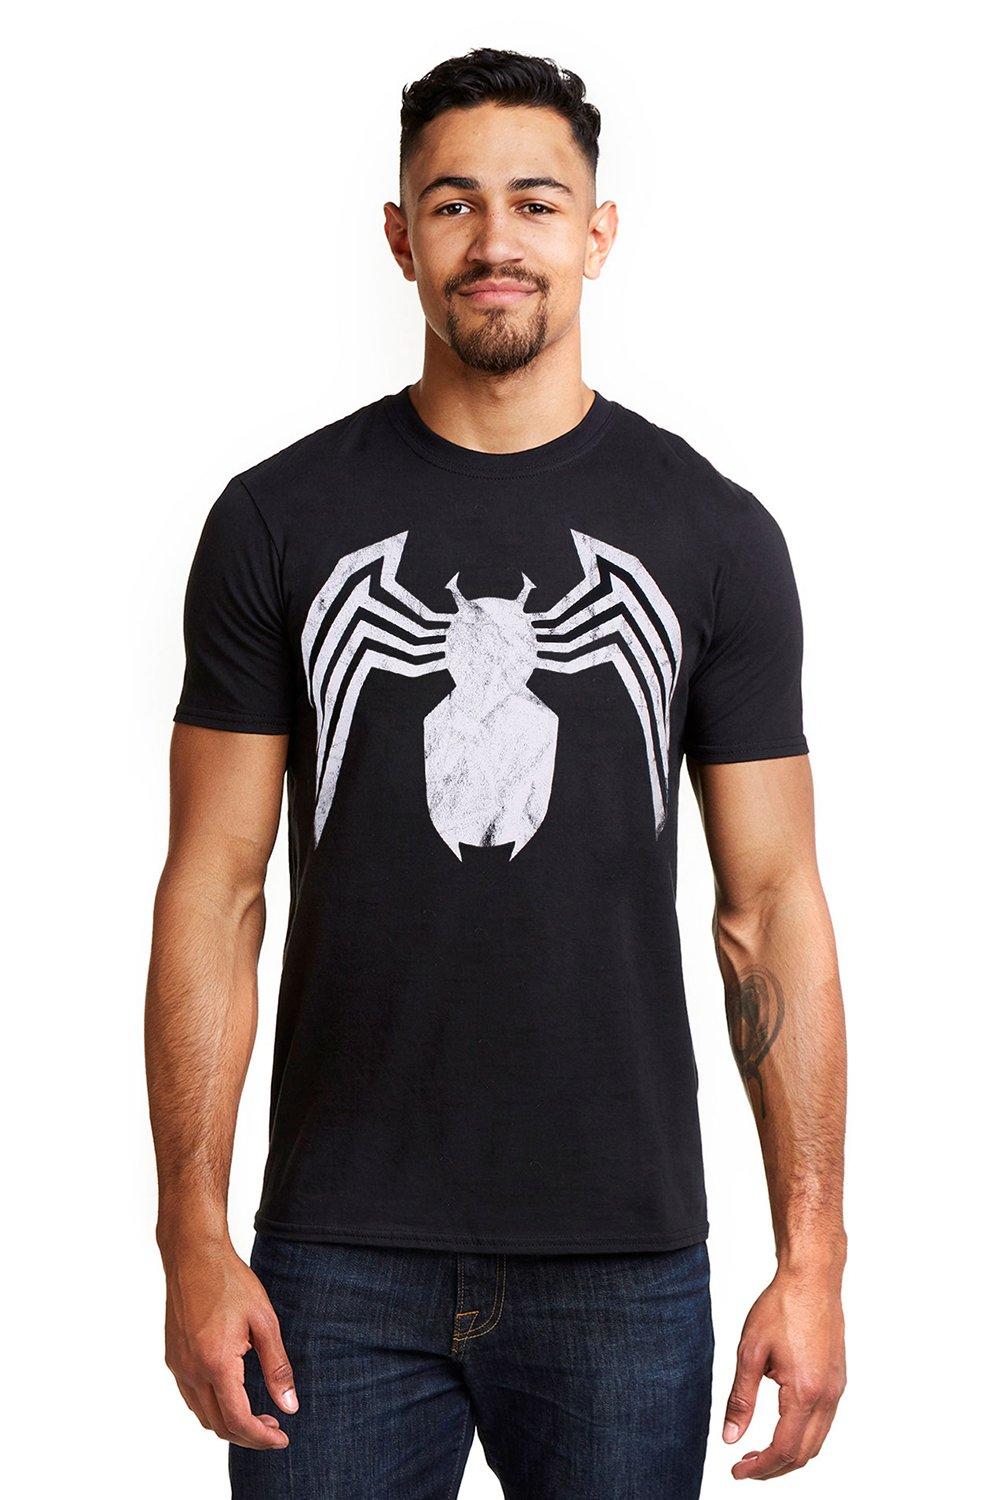 Хлопковая футболка с эмблемой Venom Marvel, черный